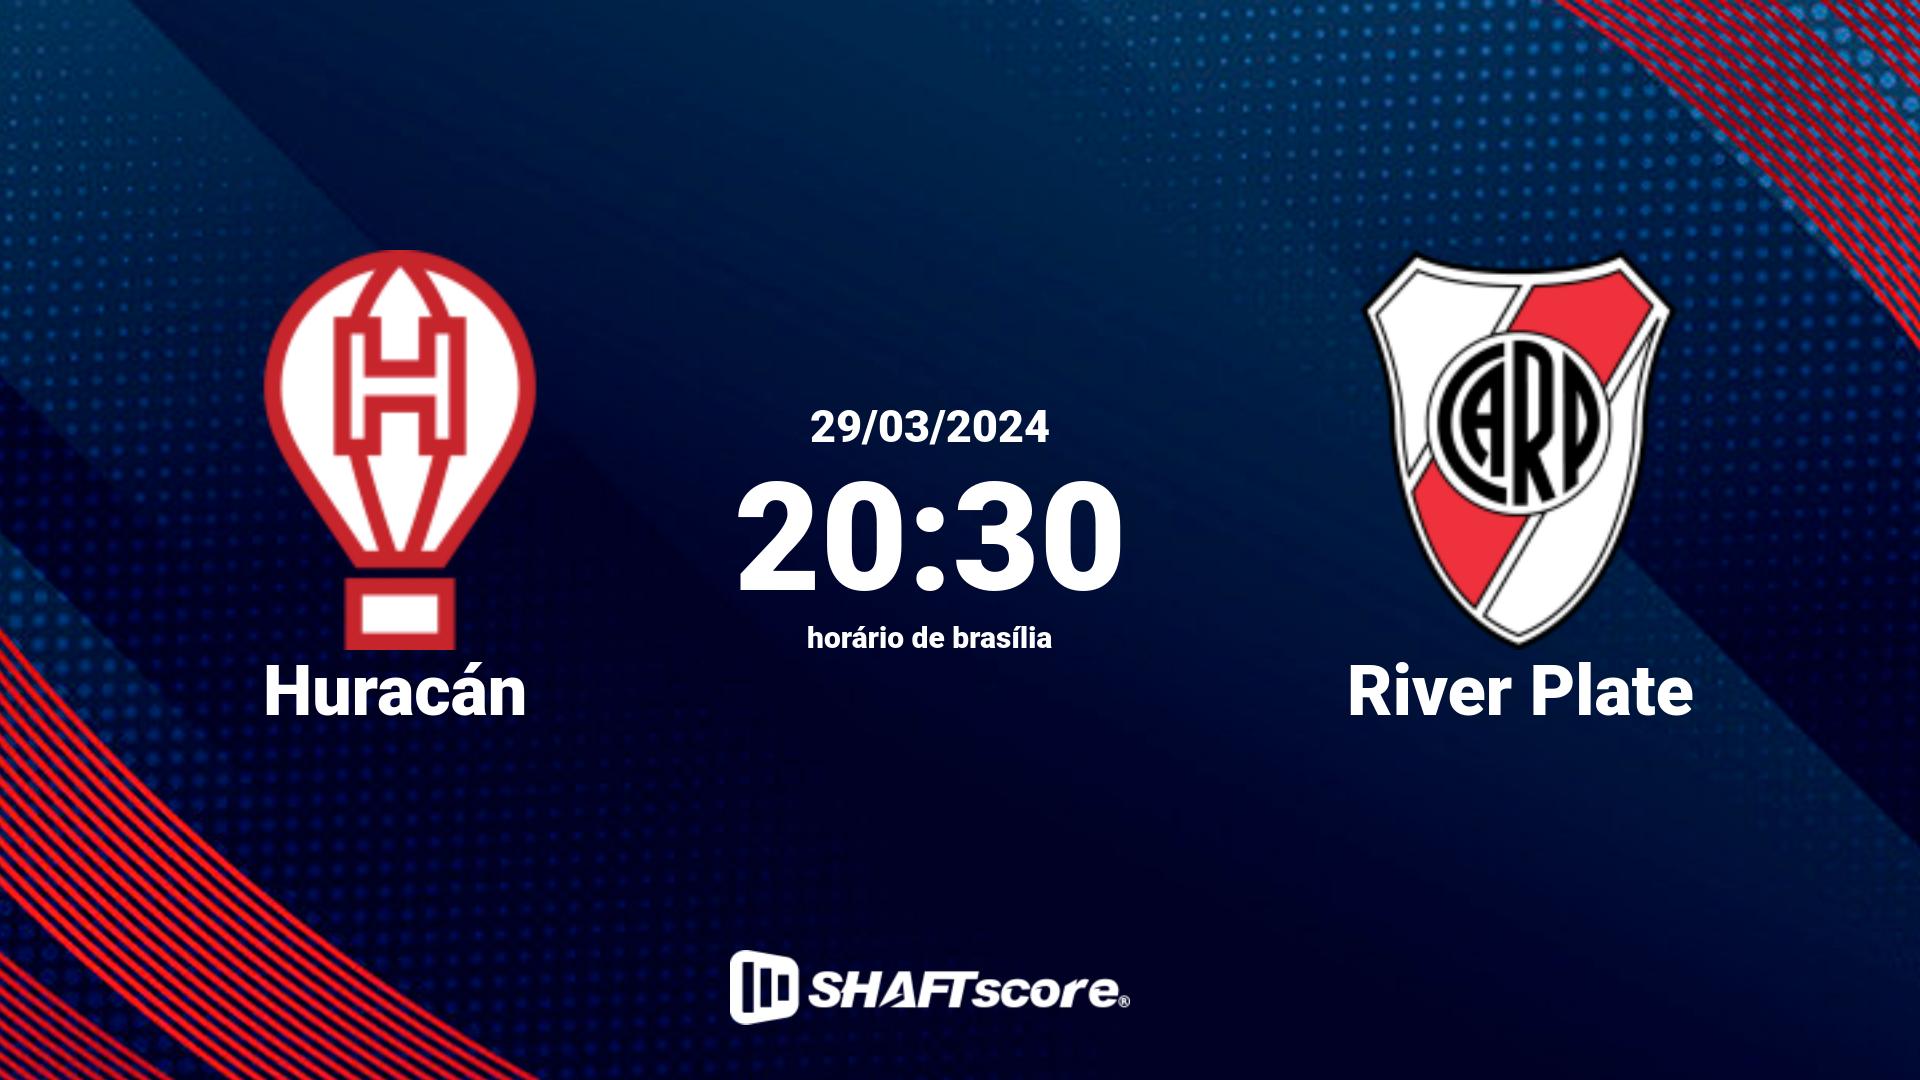 Estatísticas do jogo Huracán vs River Plate 29.03 20:30